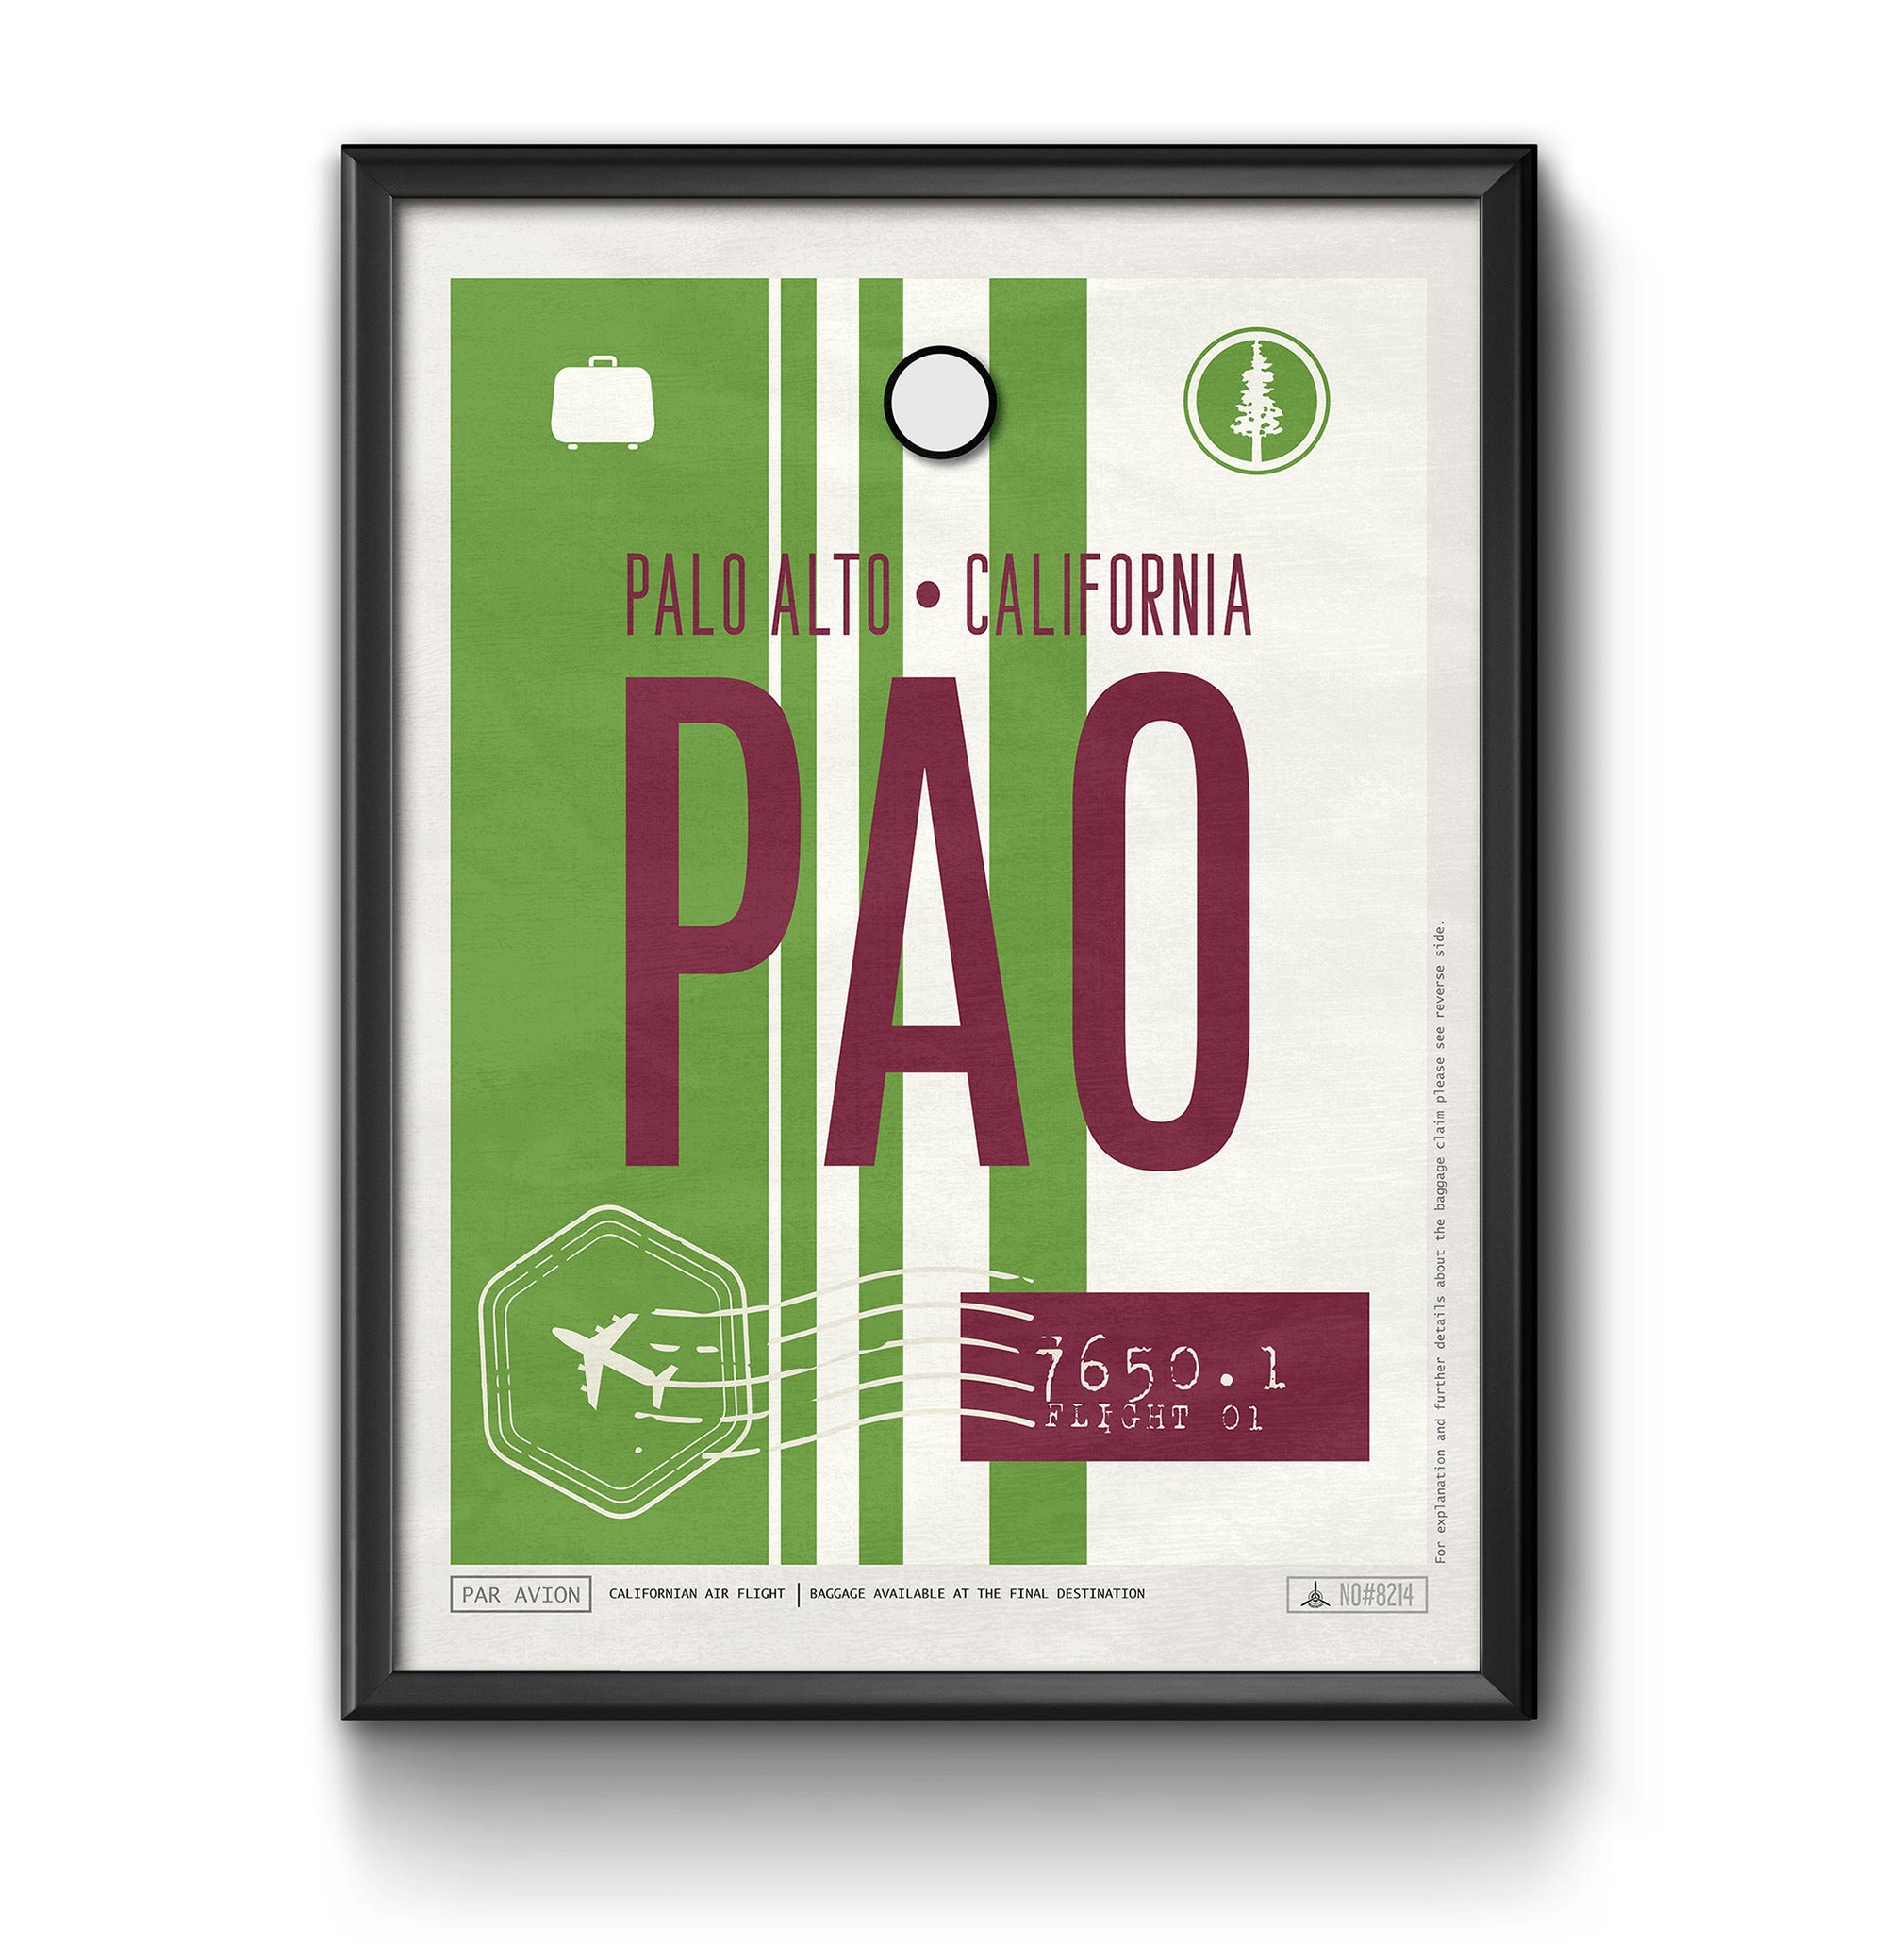 Palo Alto, California, USA - PAO Airport Code Poster